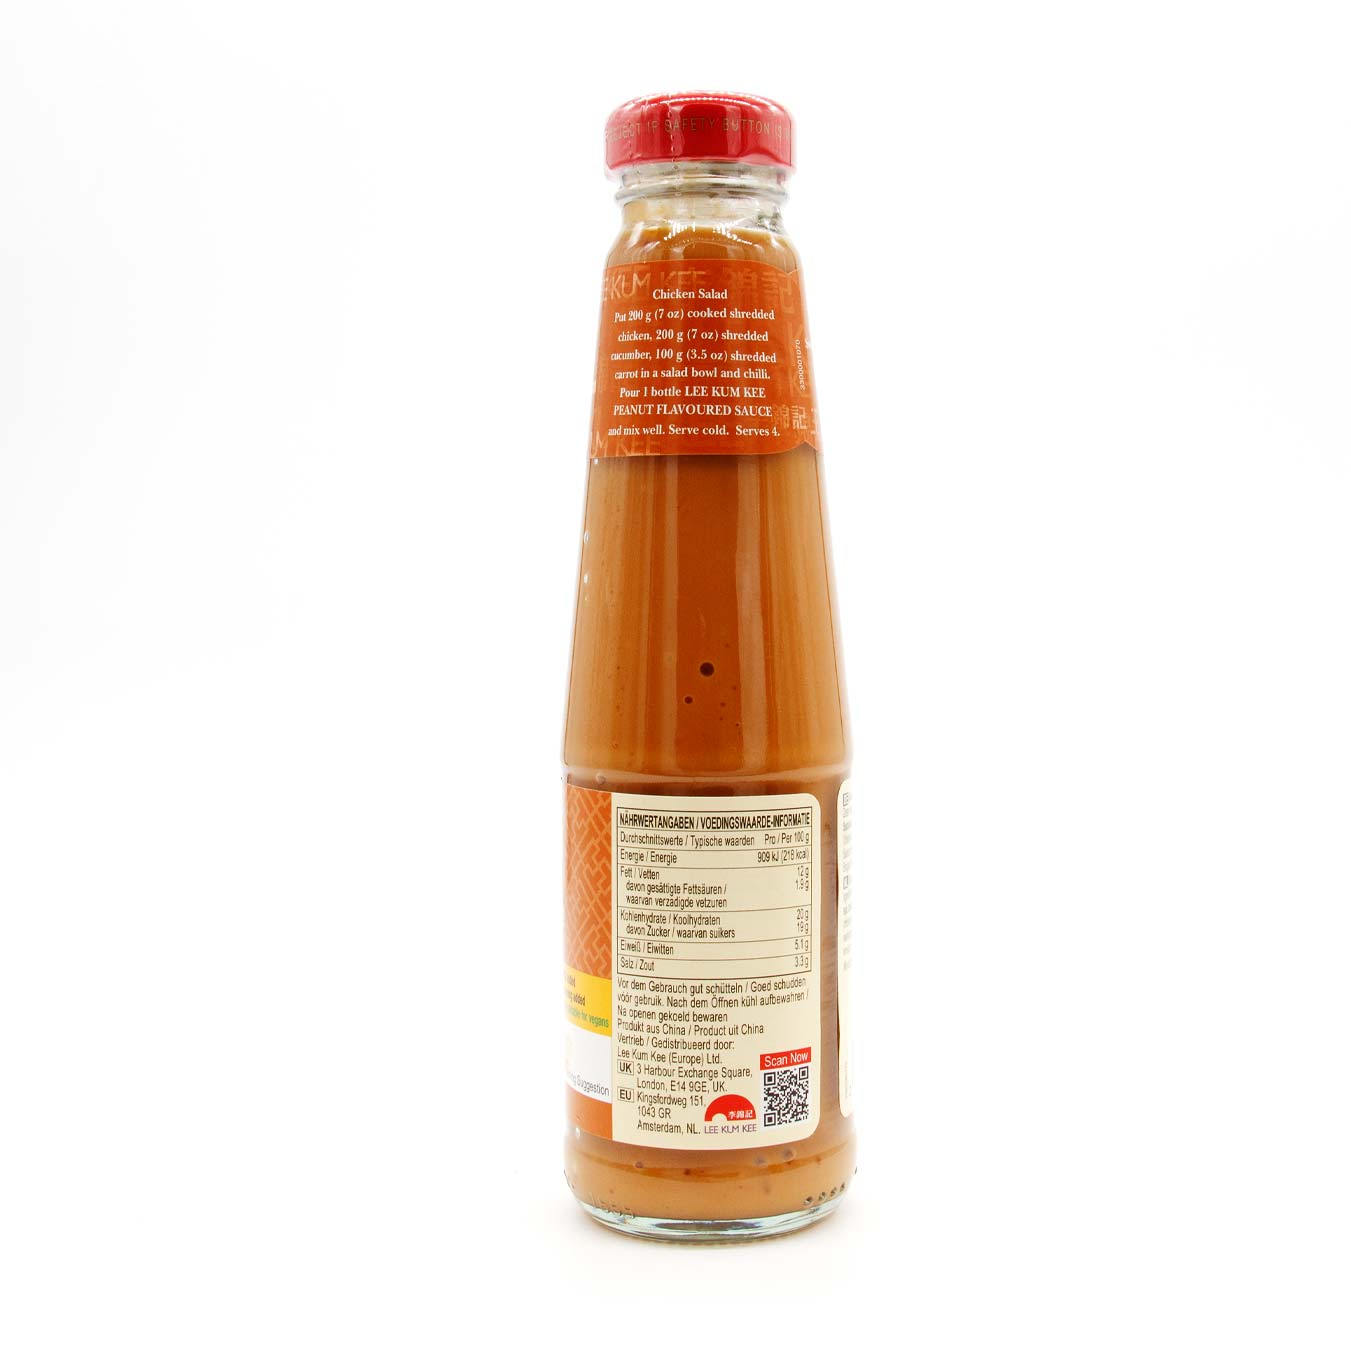 Lee Kum Kee Peanut sauce 226 g :: Asian food online